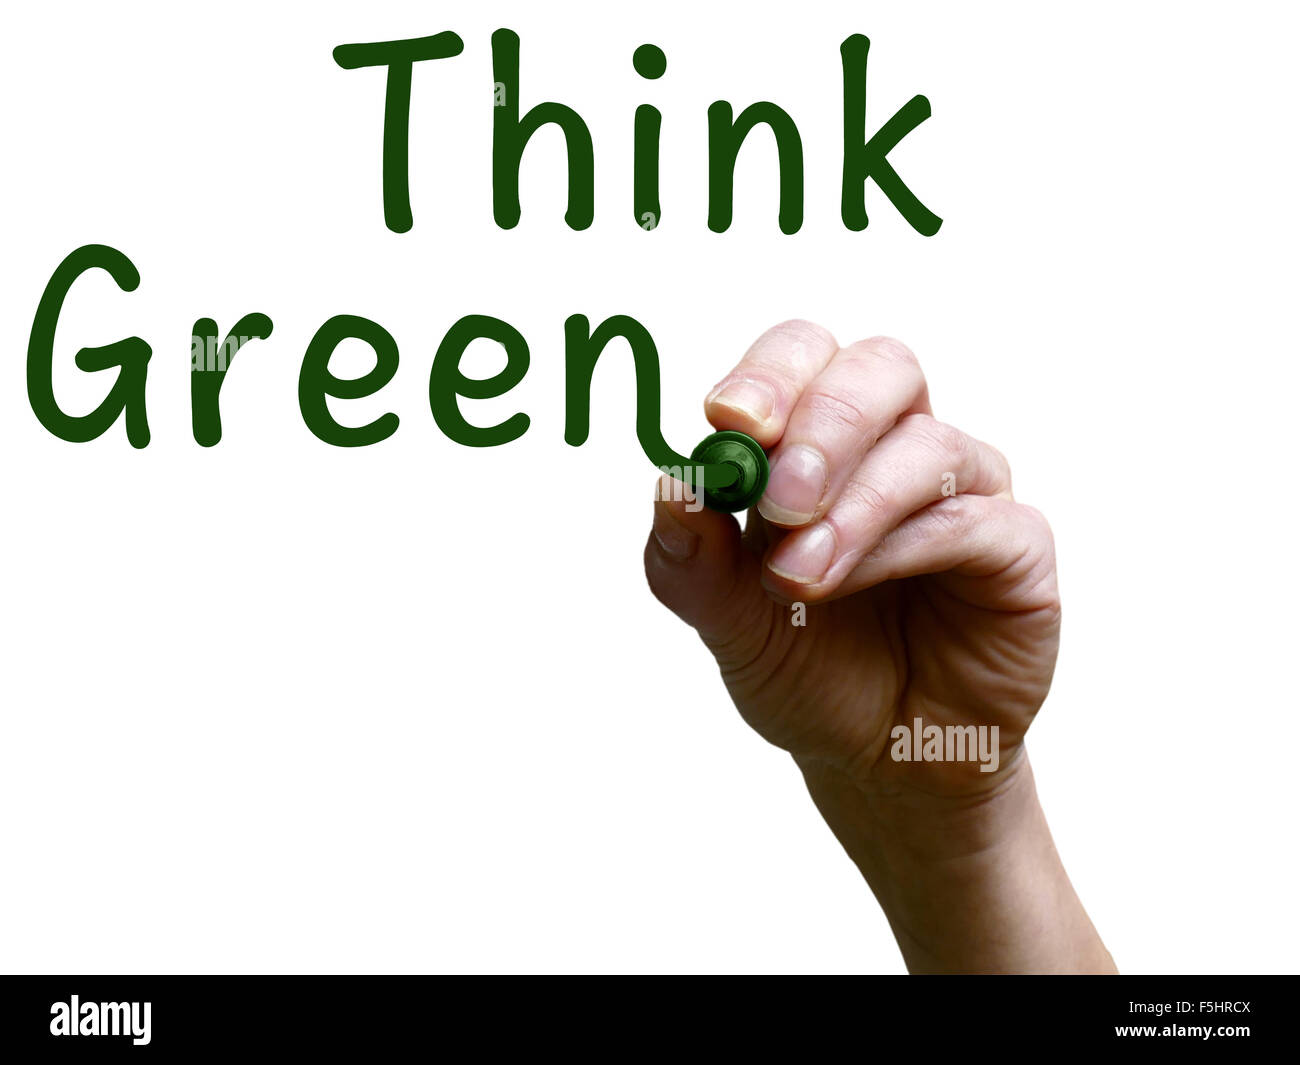 Denken Sie grün mit grüne Markierung auf transparenten Whiteboard  Handschrift Stockfotografie - Alamy